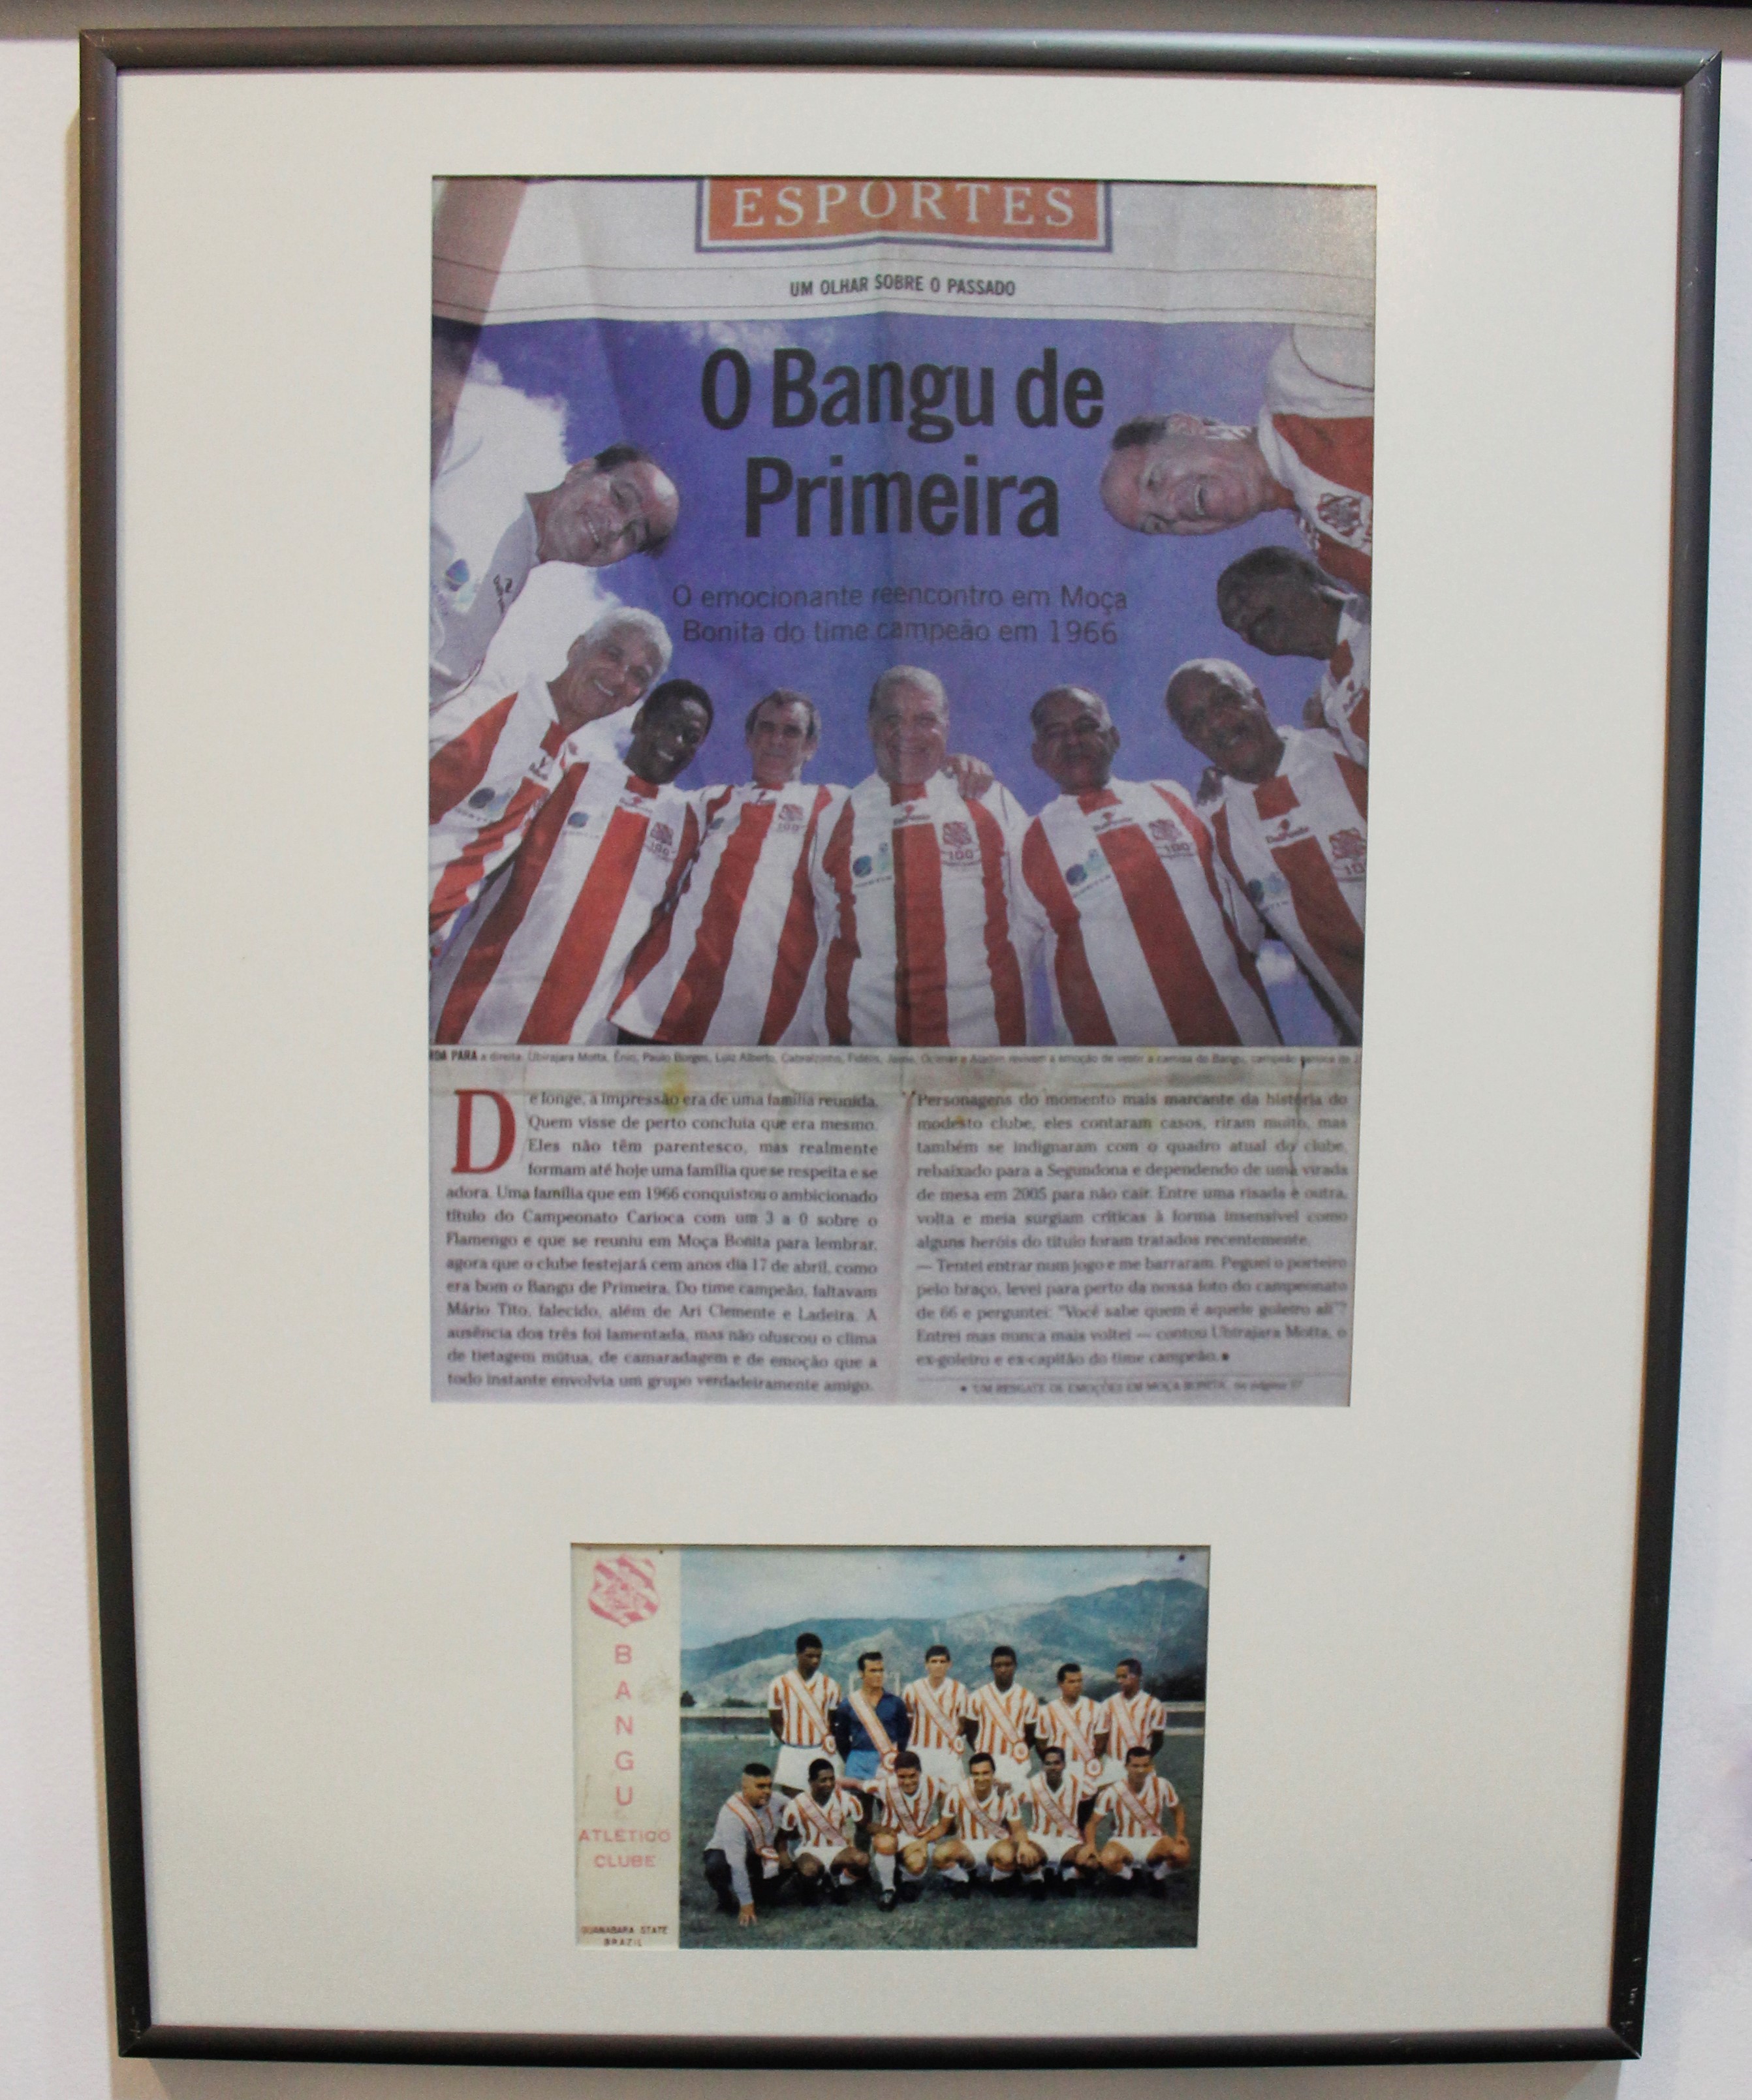 Aladim - 1989 - Comemoração de 100 anos do Bangu Atlético Clube do Rio de Janeiro; 1966 - Time Bangu Atlético Clube.